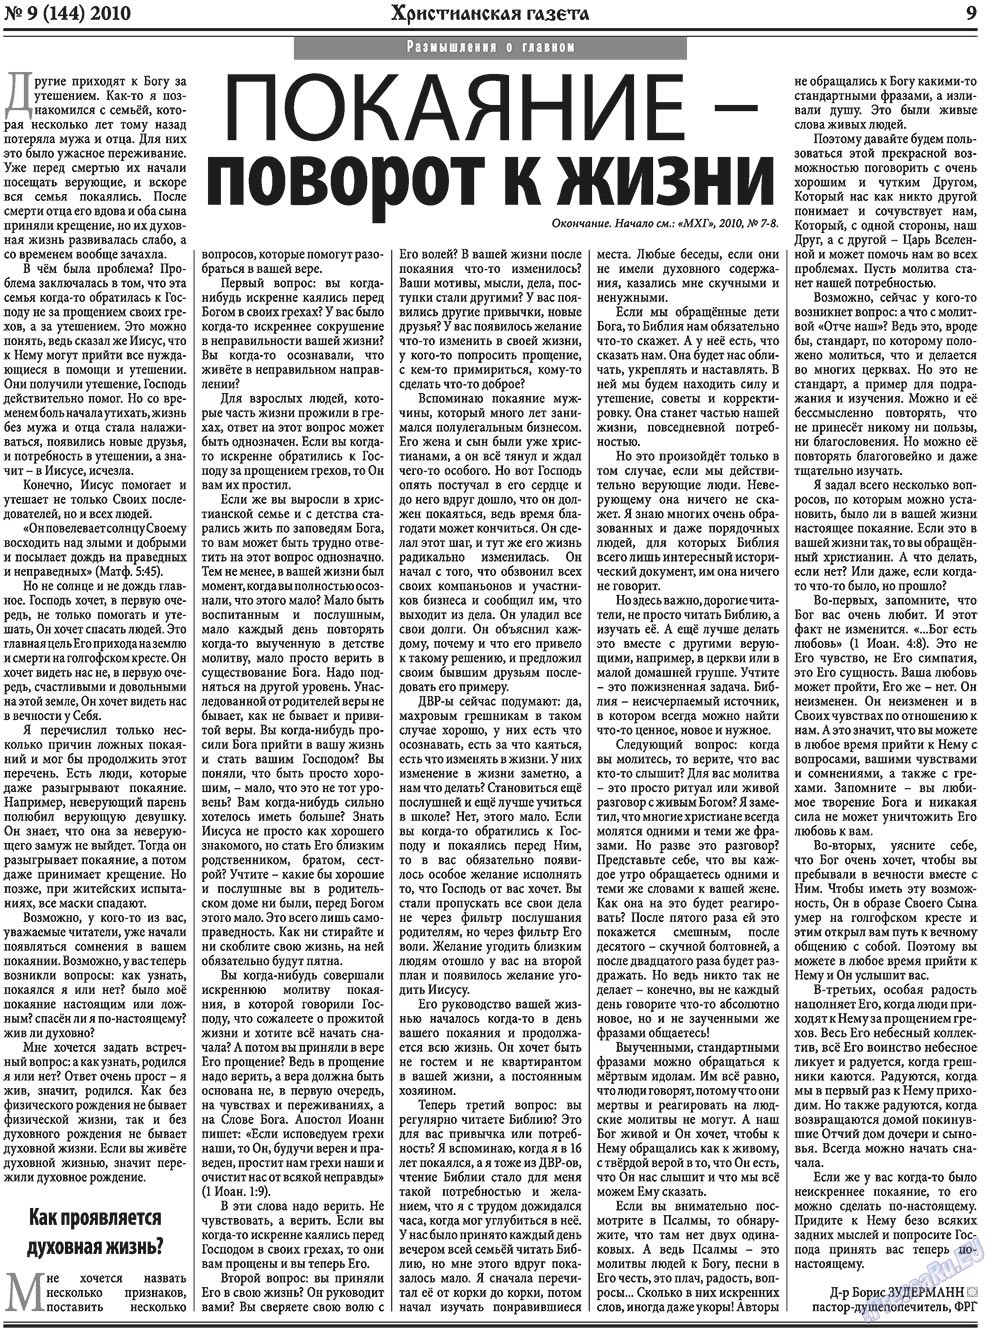 Христианская газета, газета. 2010 №9 стр.9